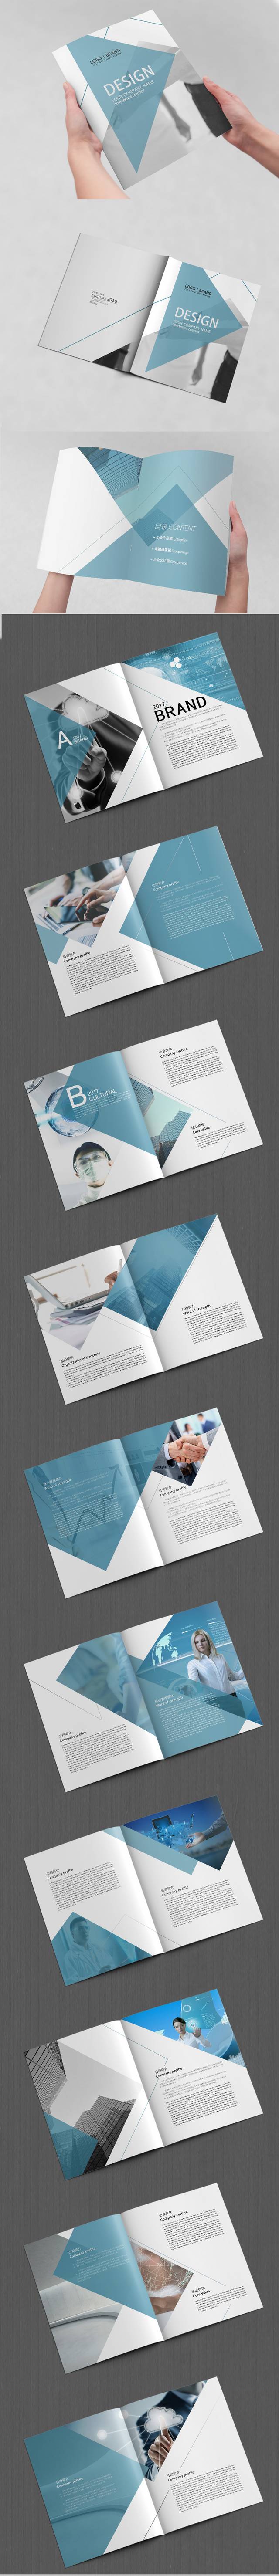 灰色高档企业画册设计